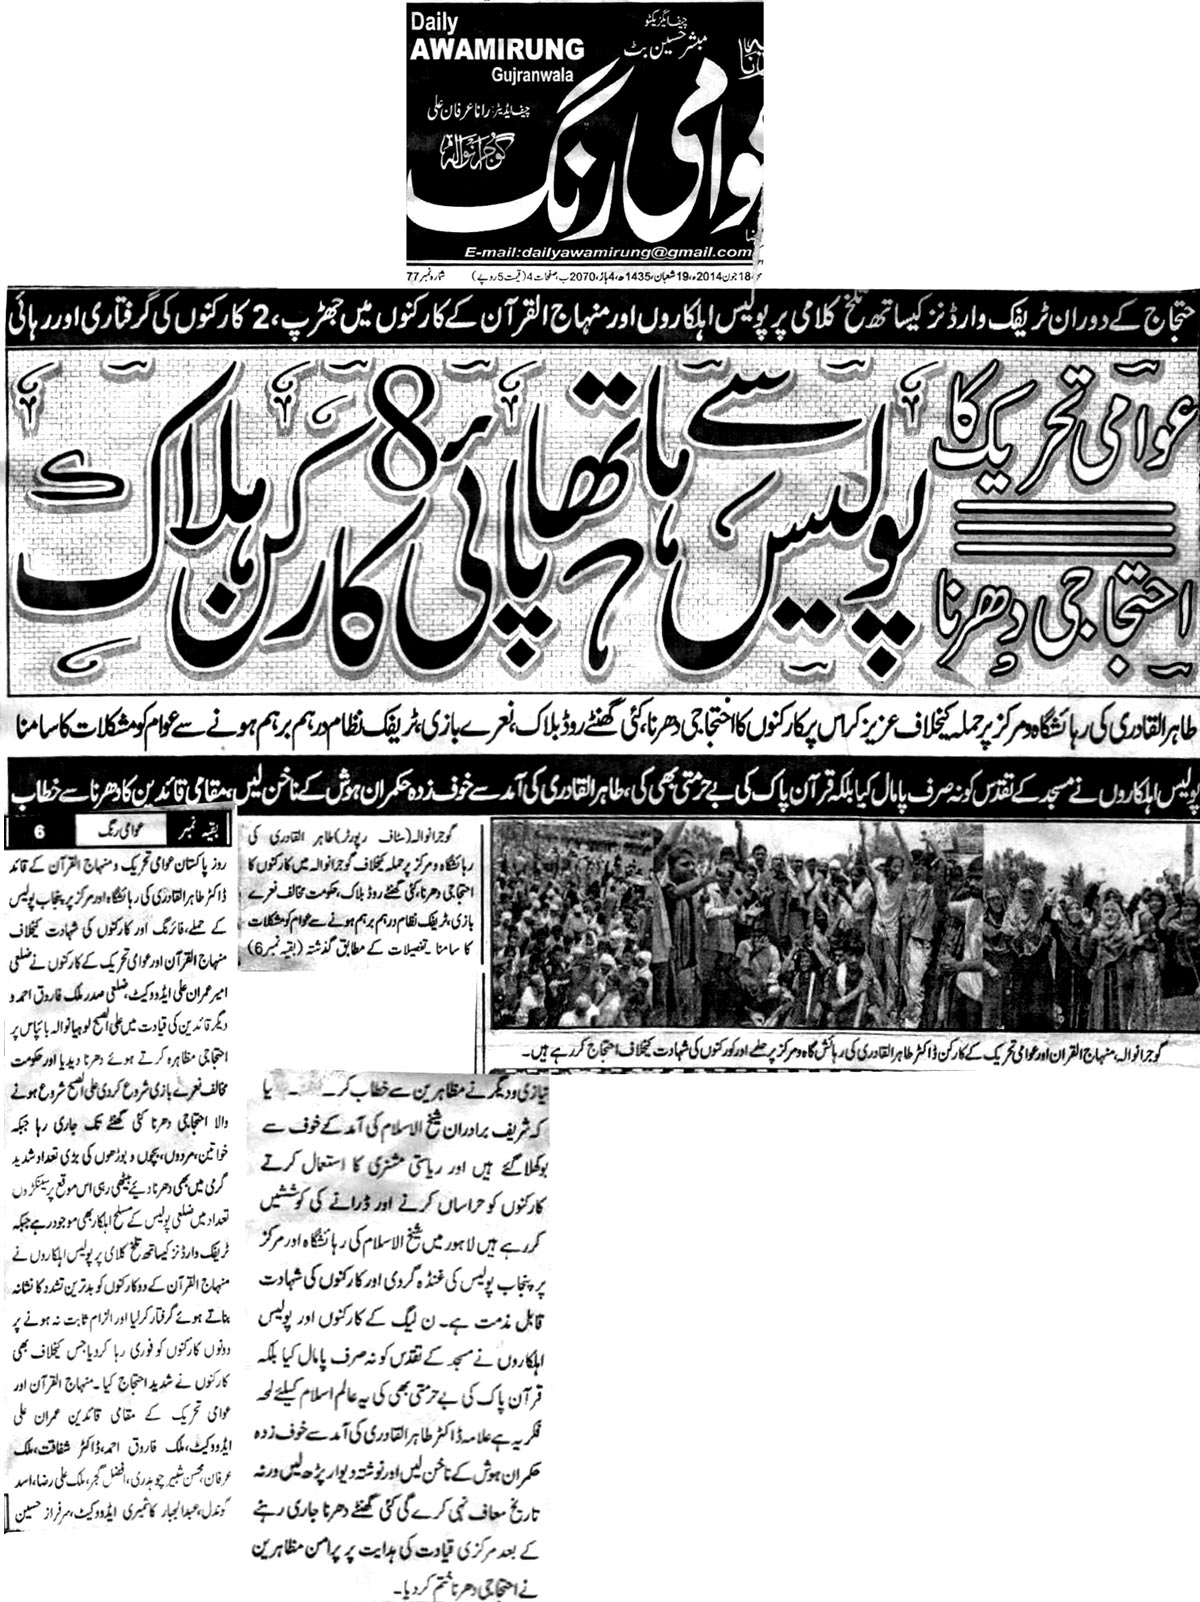 Print Media Coverage Awami Rung - Gujranwala